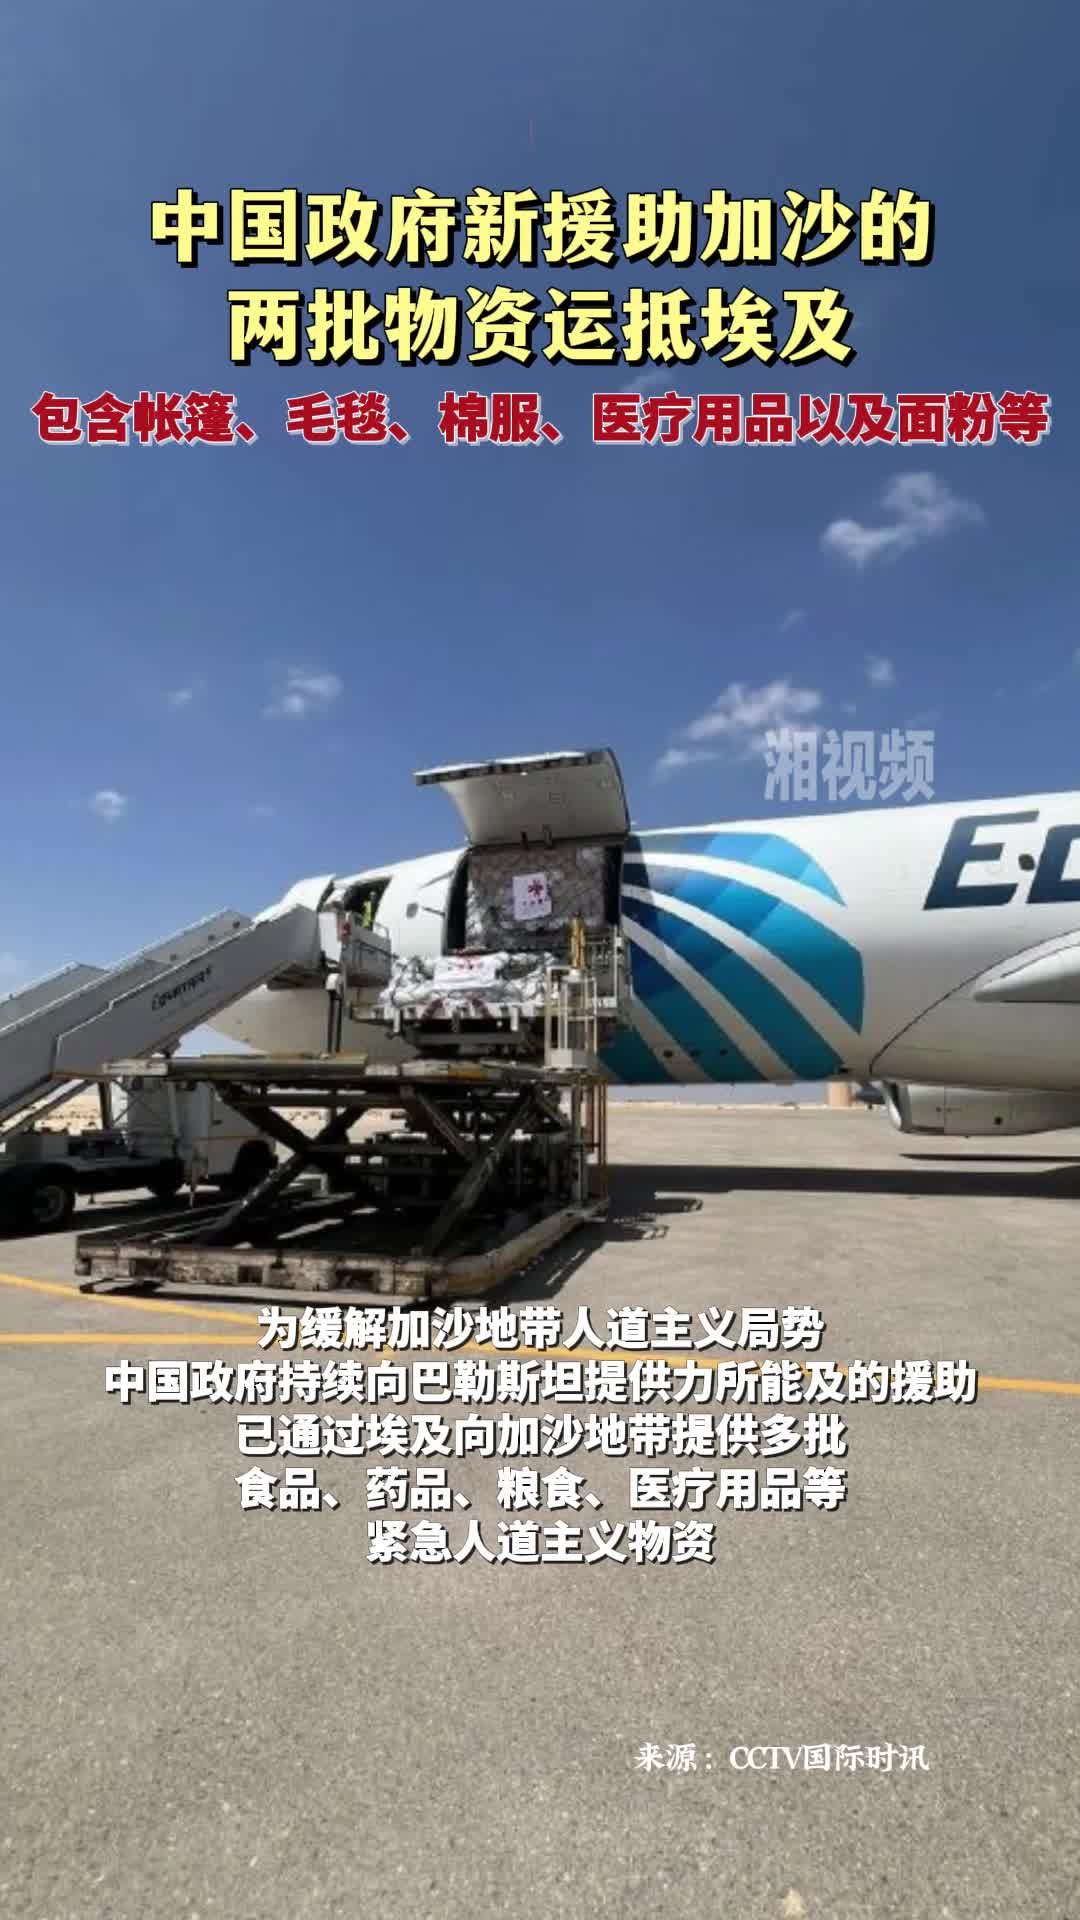 中国政府新援助加沙的两批物资运抵埃及